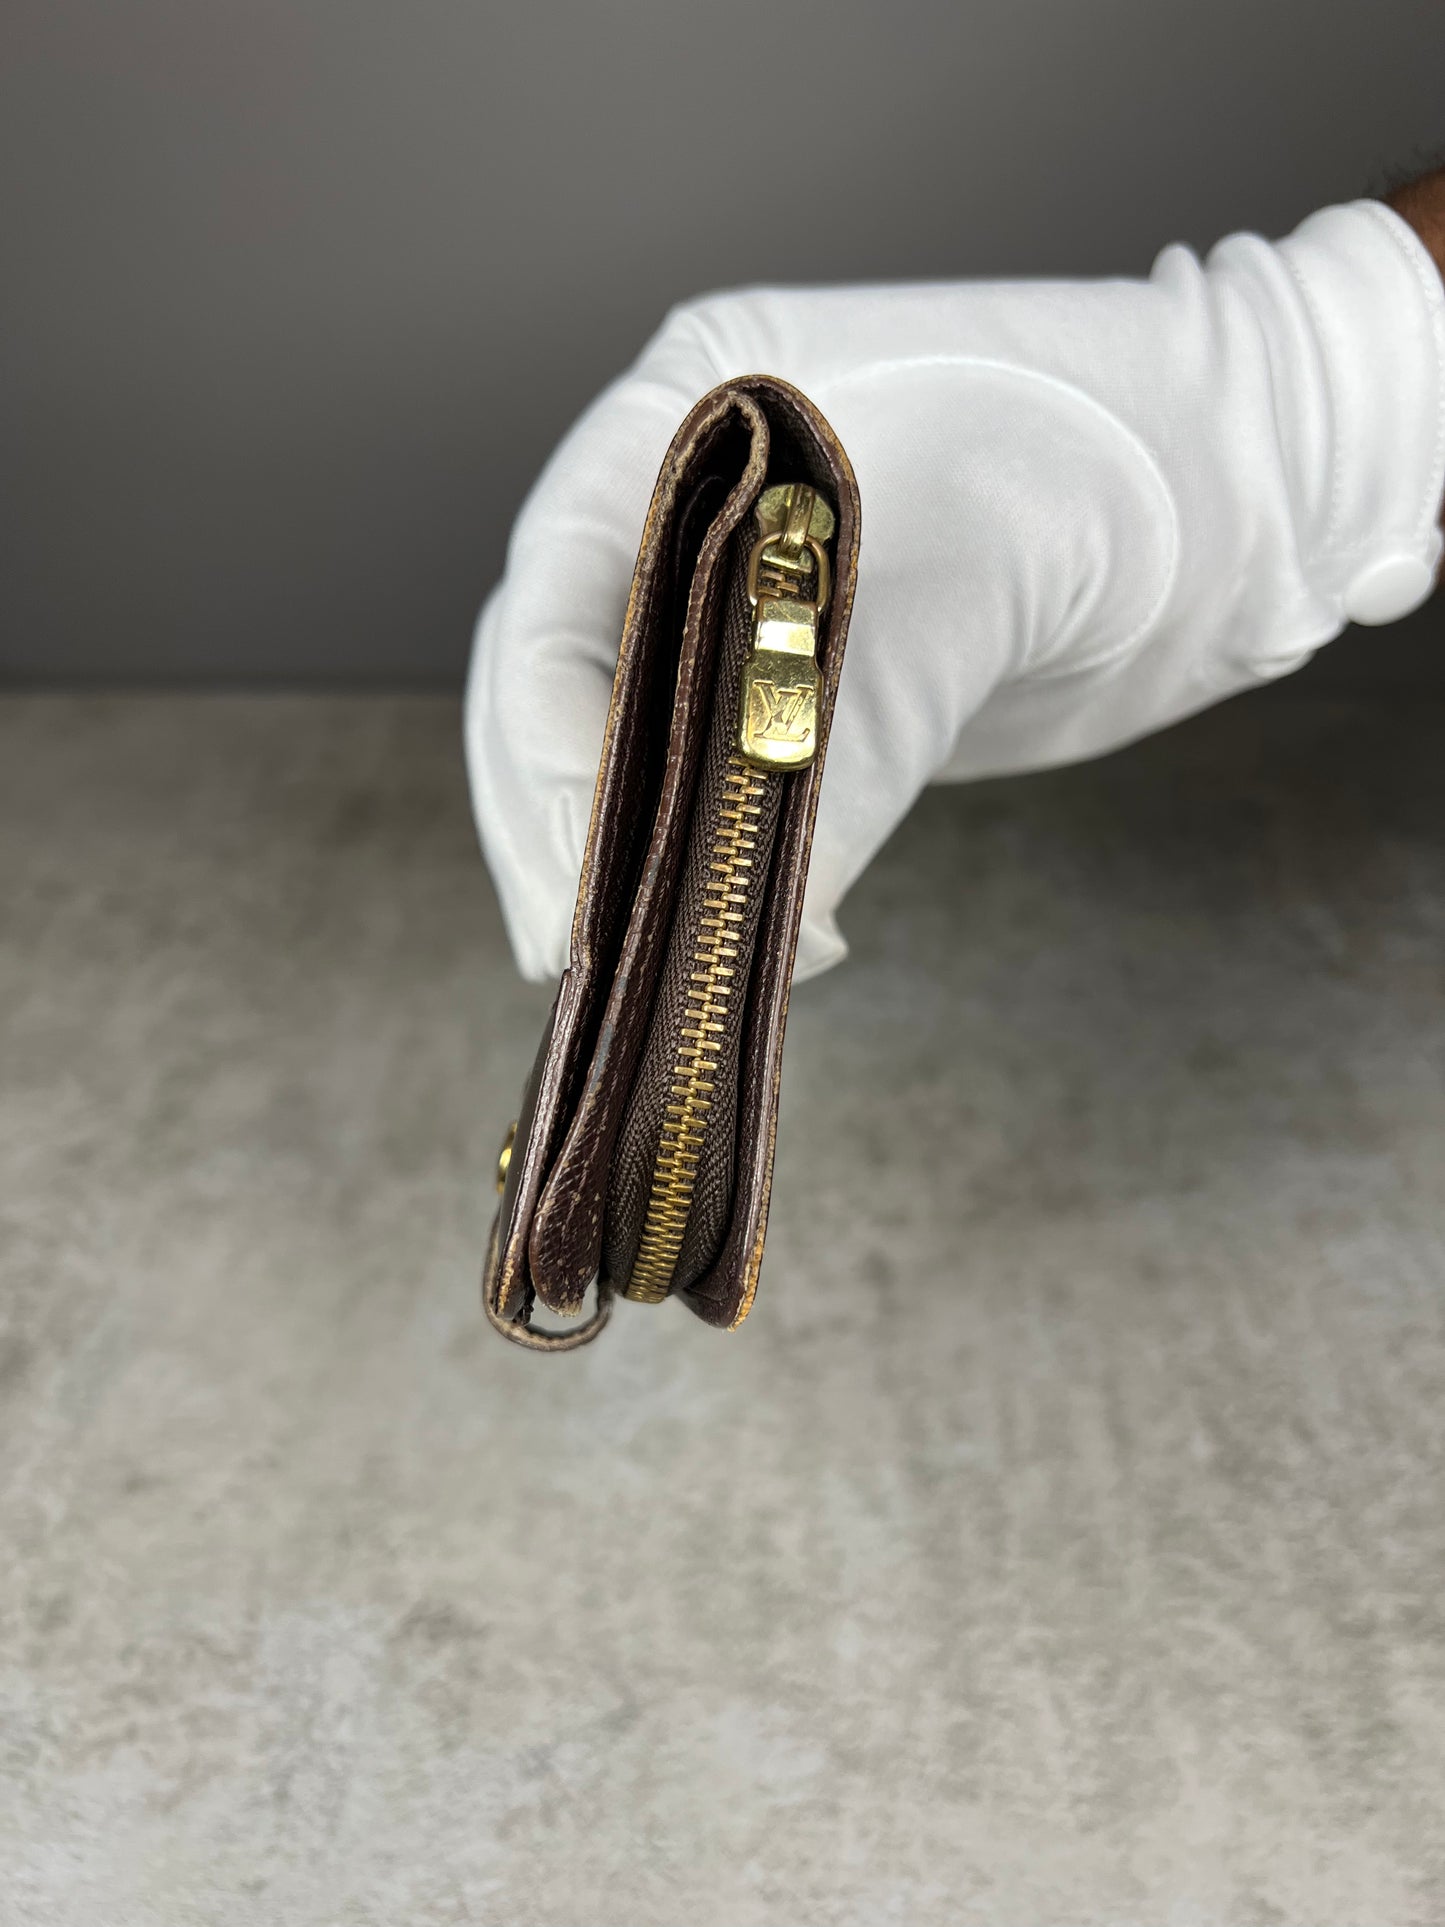 Louis Vuitton Compact Zip Wallet – Swap Hands Inc.